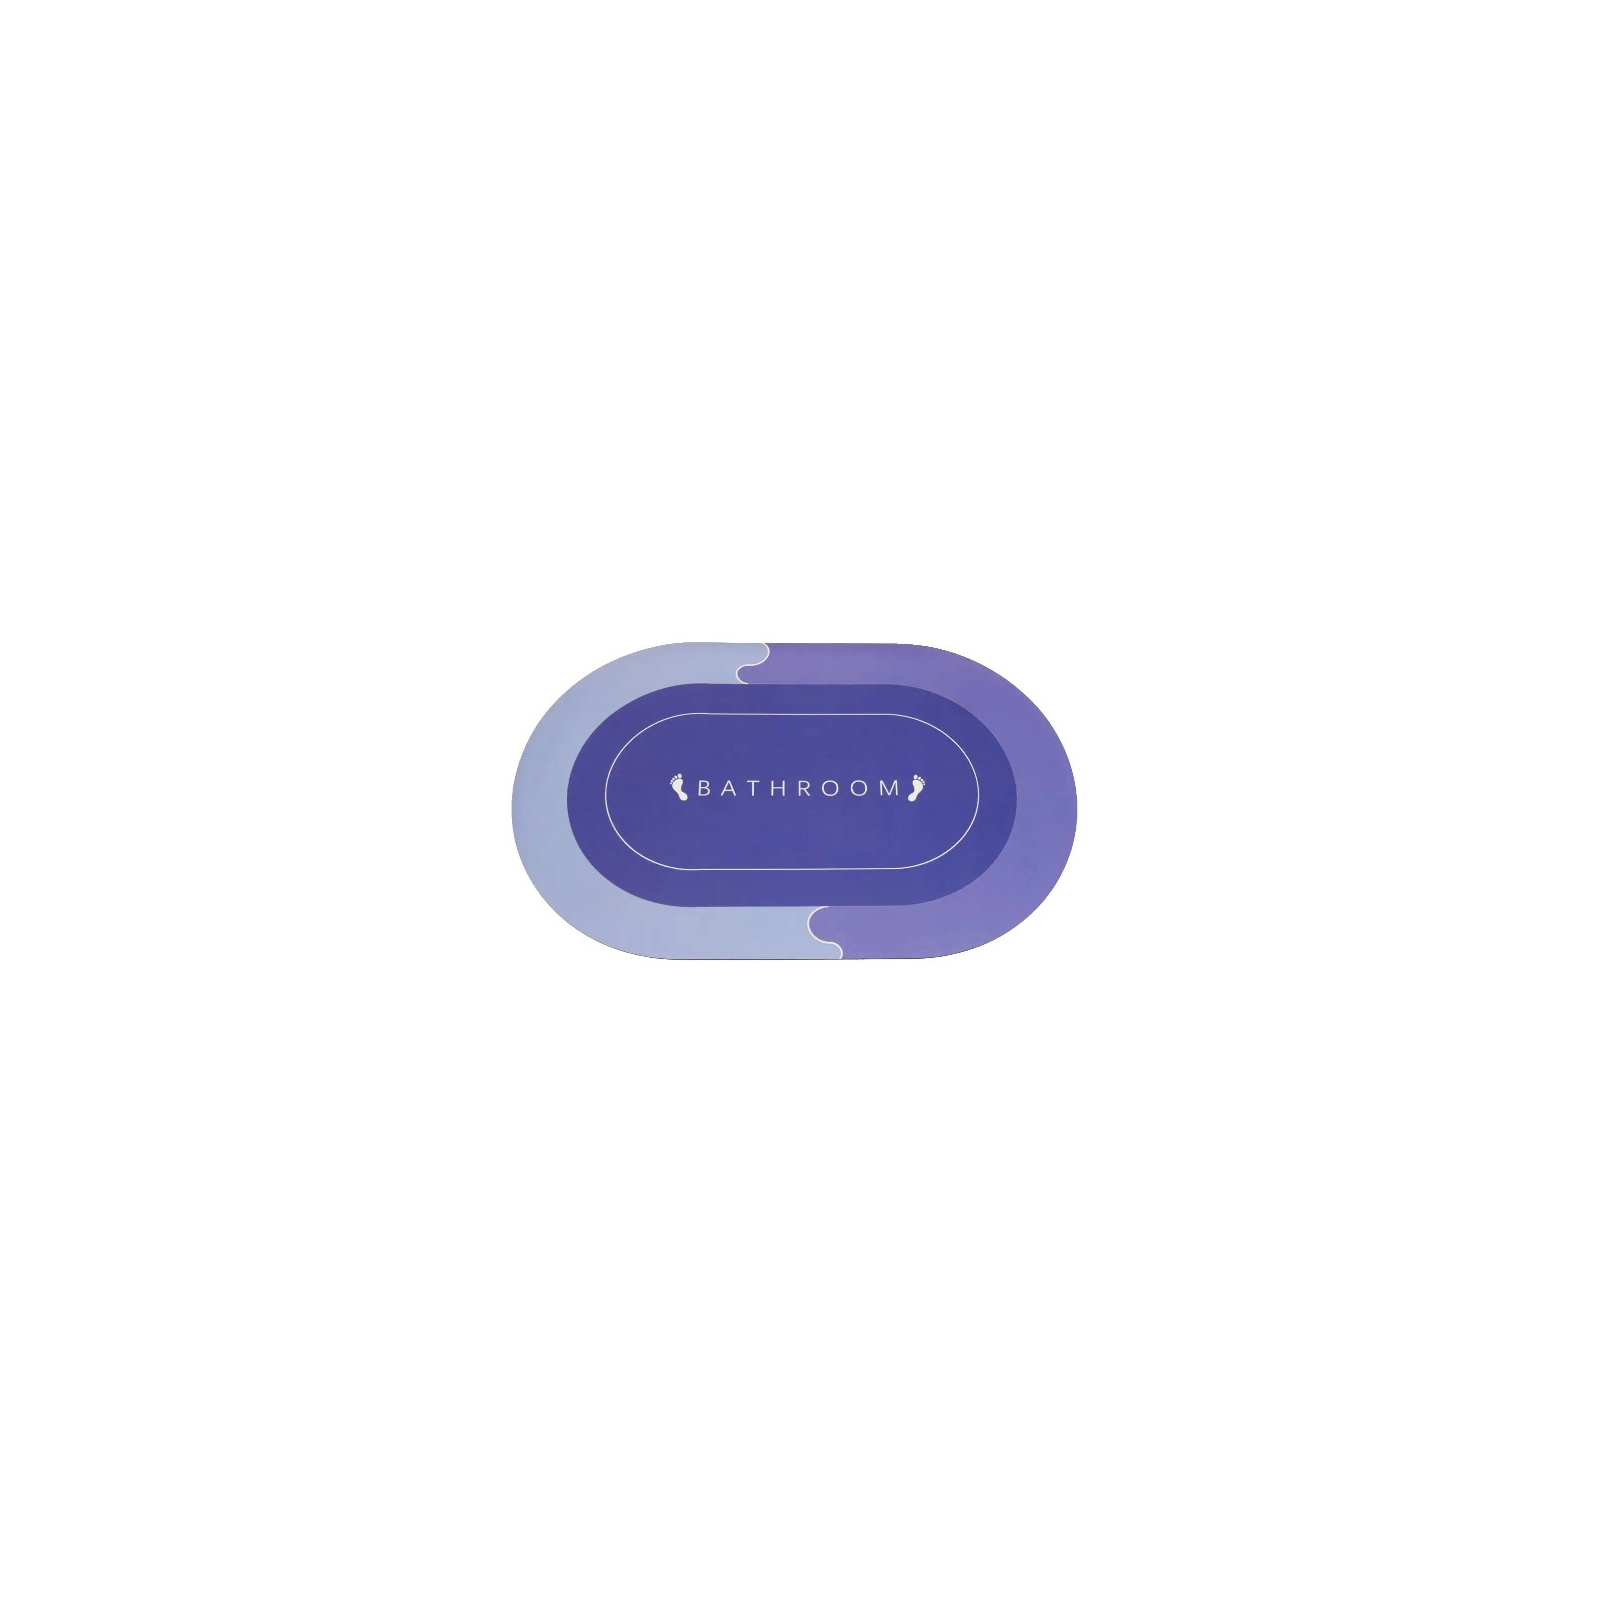 Коврик для ванной Stenson суперпоглощающий 50 х 80 см овальный светло-фиолетовый (R30940 l.violet) изображение 3